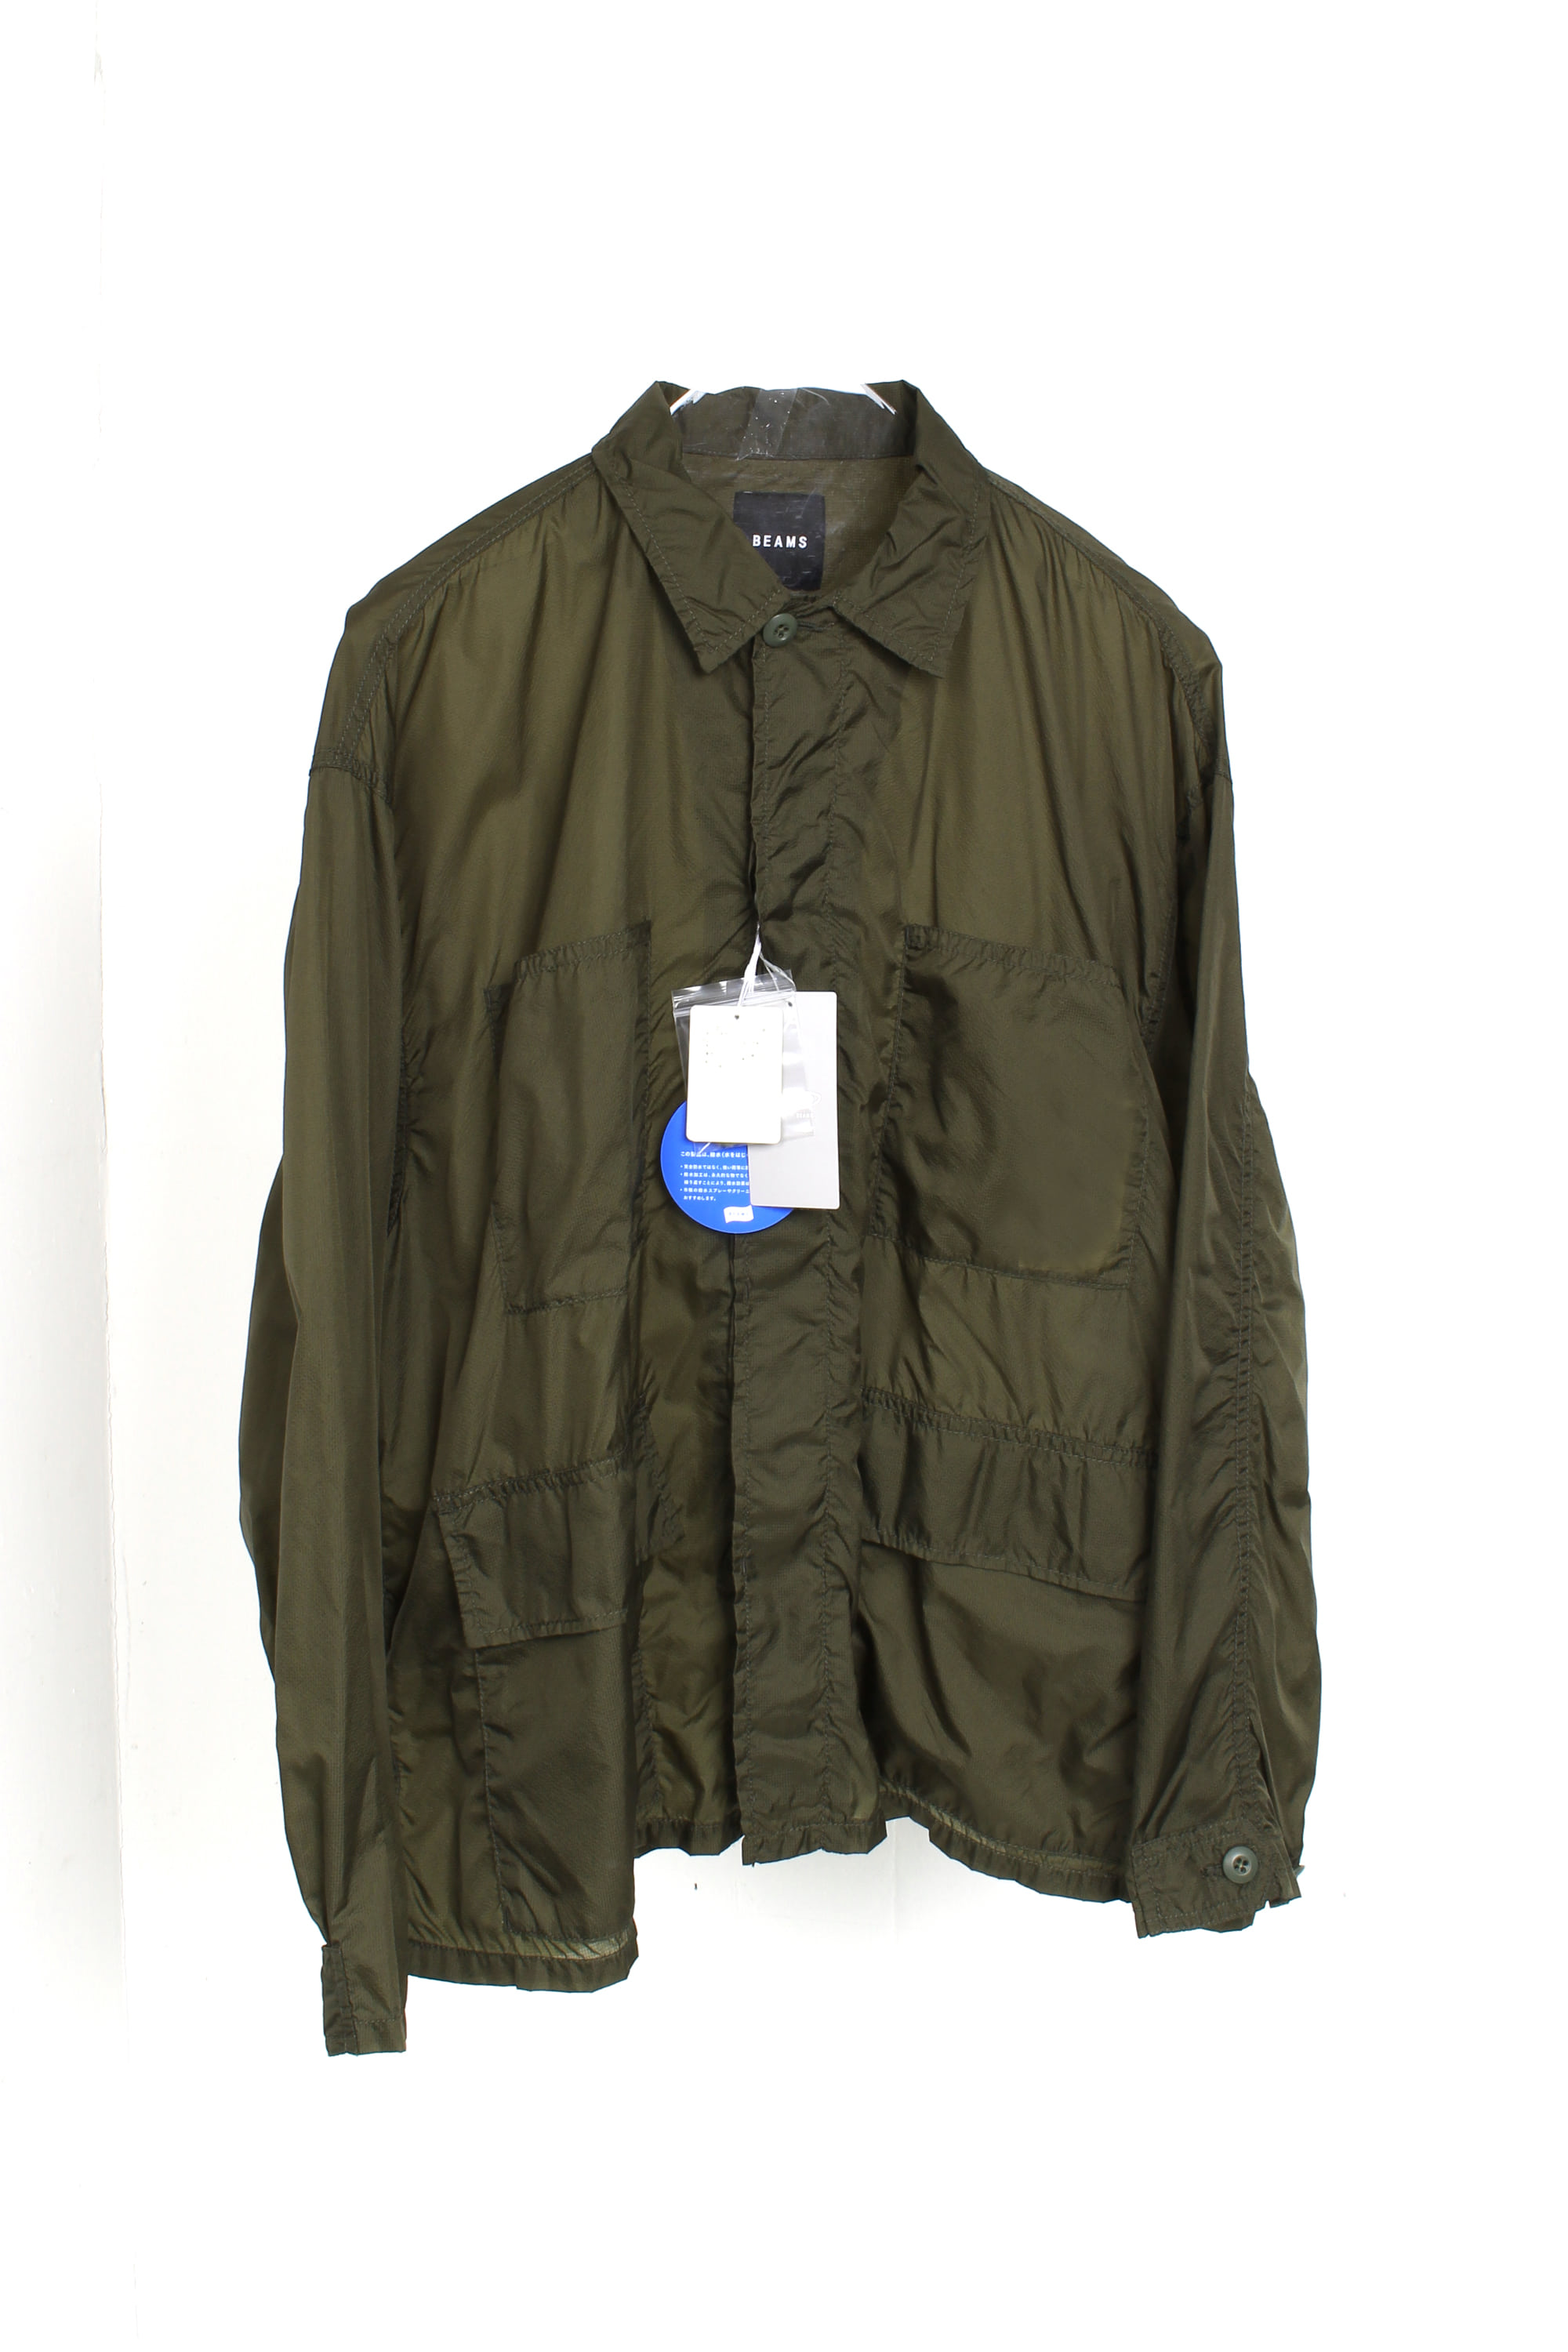 BEAMS Nylon BDU Jacket(XL)